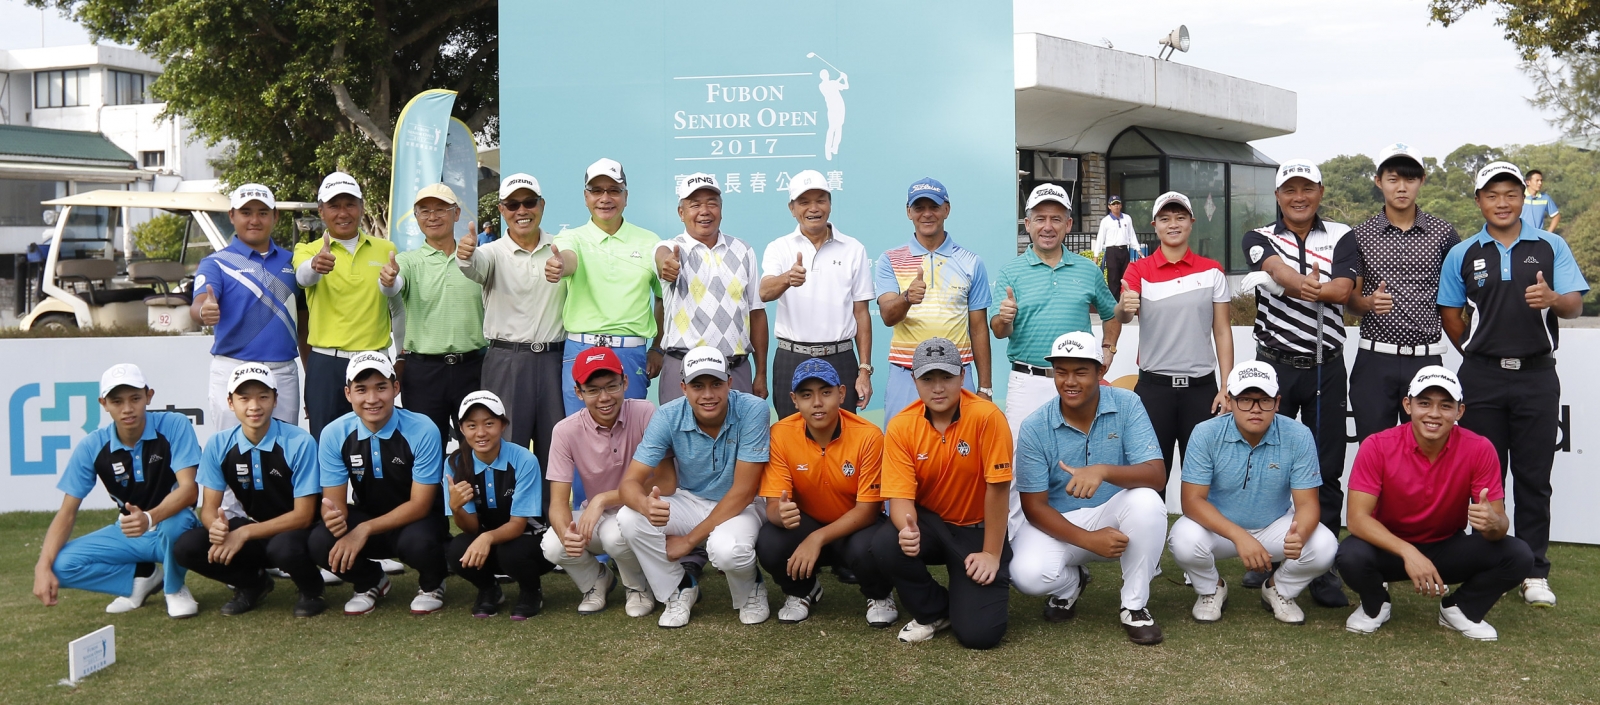 台灣長春高爾夫協會理事長盧建順(右)頒發超級長春組冠軍獎盃給三連冠的國寶級老將謝敏男。